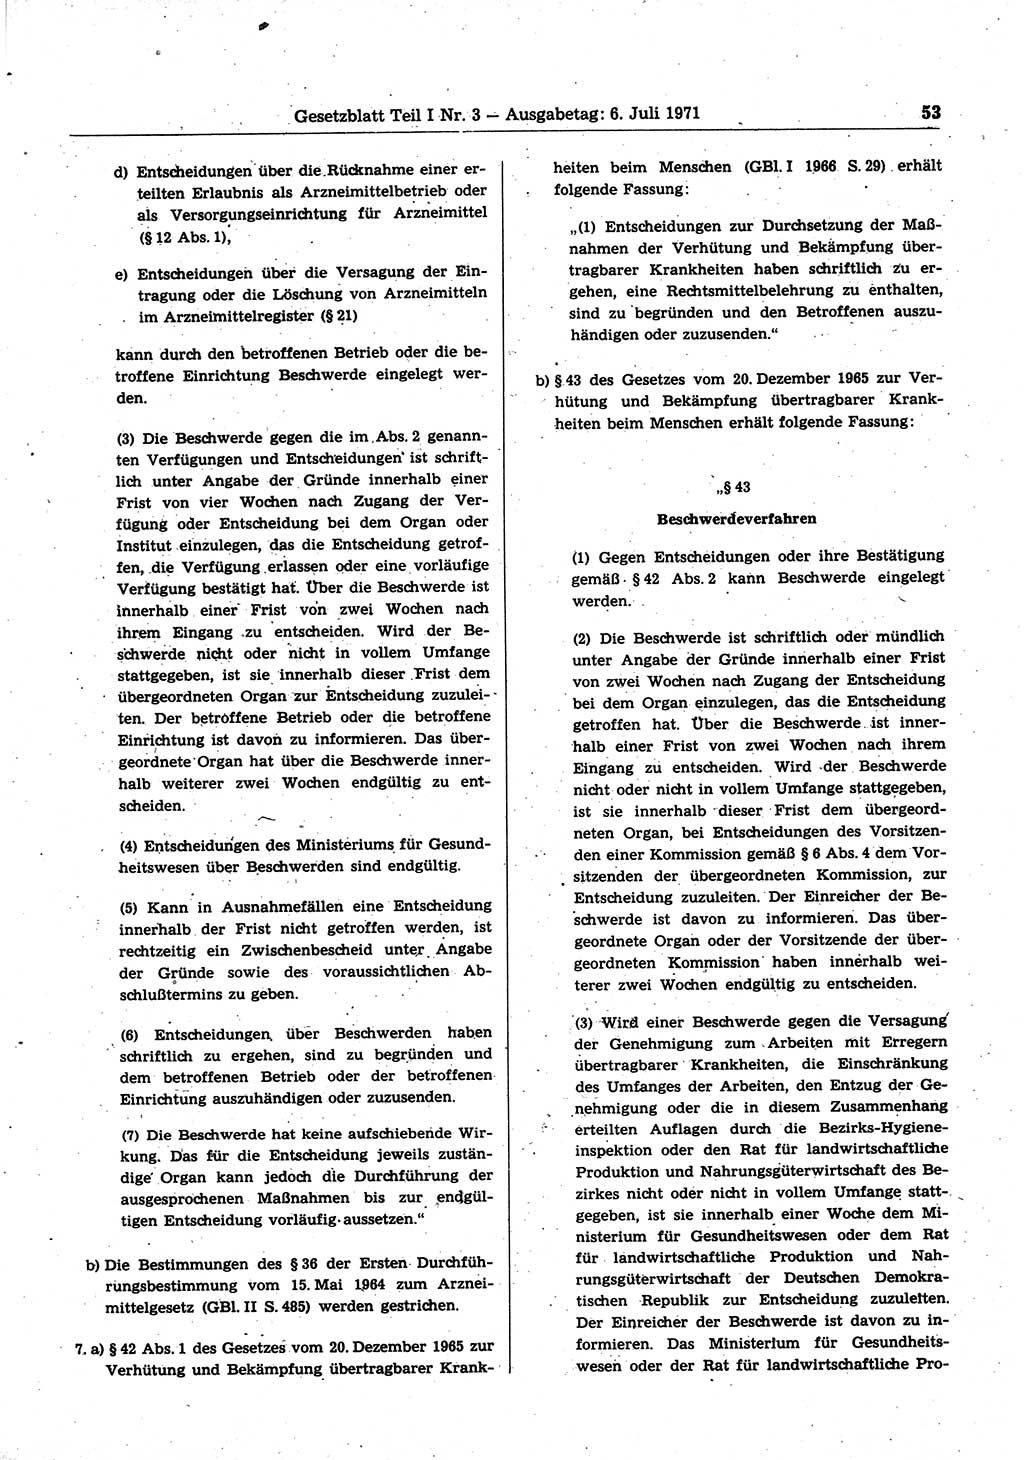 Gesetzblatt (GBl.) der Deutschen Demokratischen Republik (DDR) Teil Ⅰ 1971, Seite 53 (GBl. DDR Ⅰ 1971, S. 53)